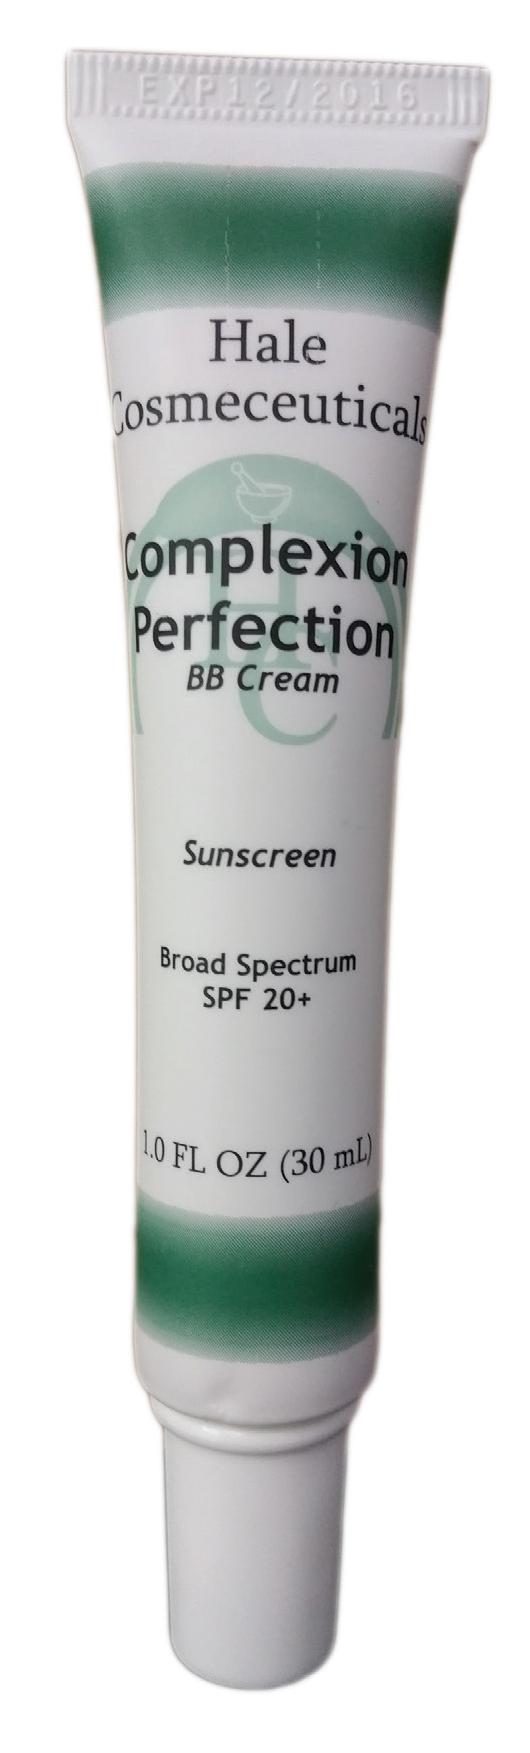 Complexion Perfection (SPF 20 BB Cream)